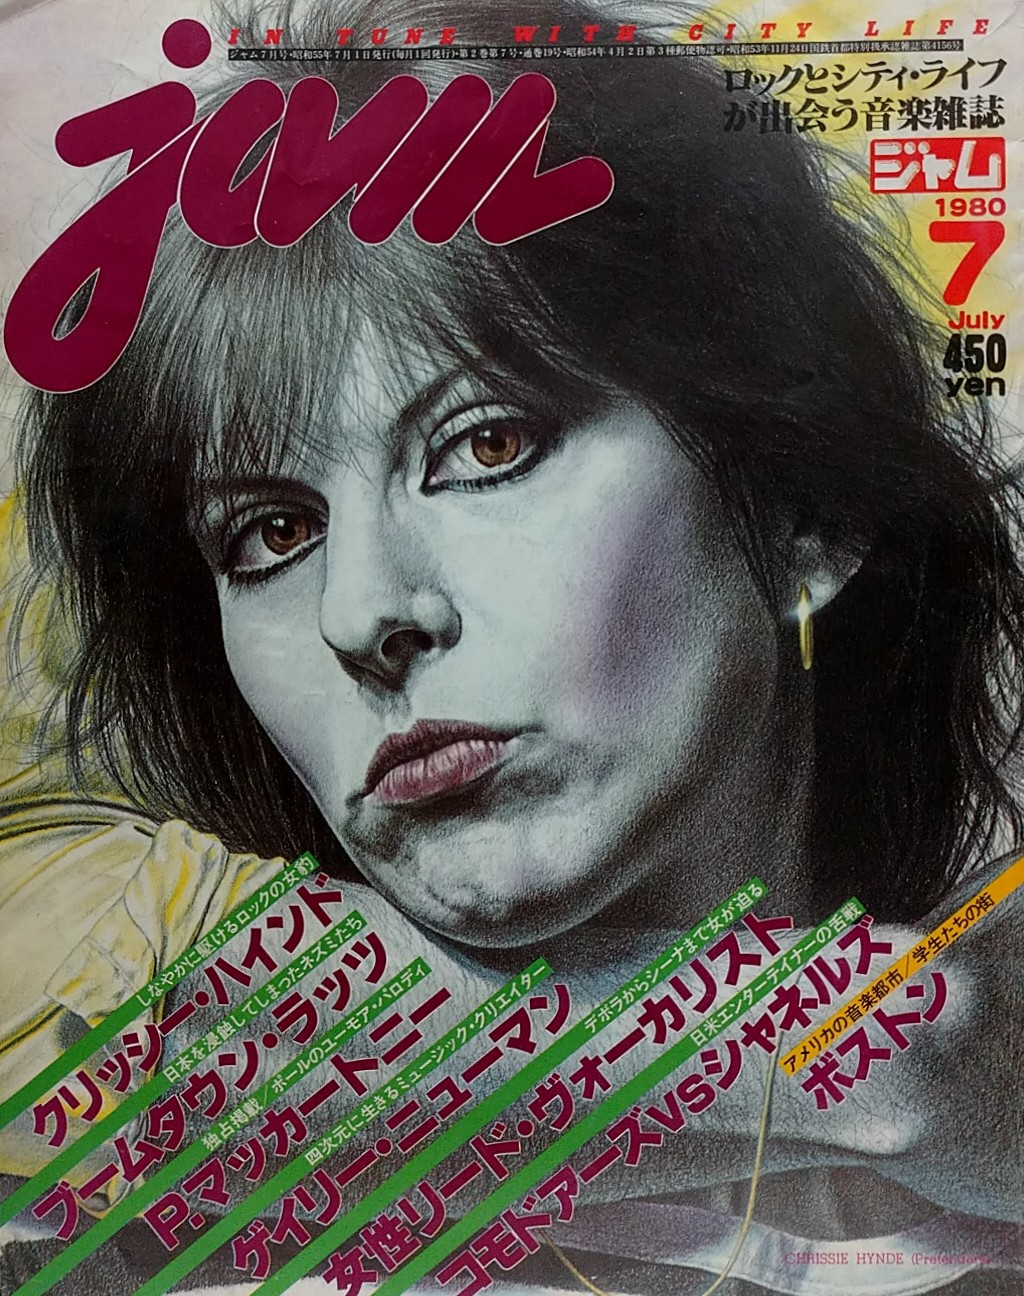 ジャム(jam) 1980年7月号No.19○表紙・特集=クリッシー・ハインド